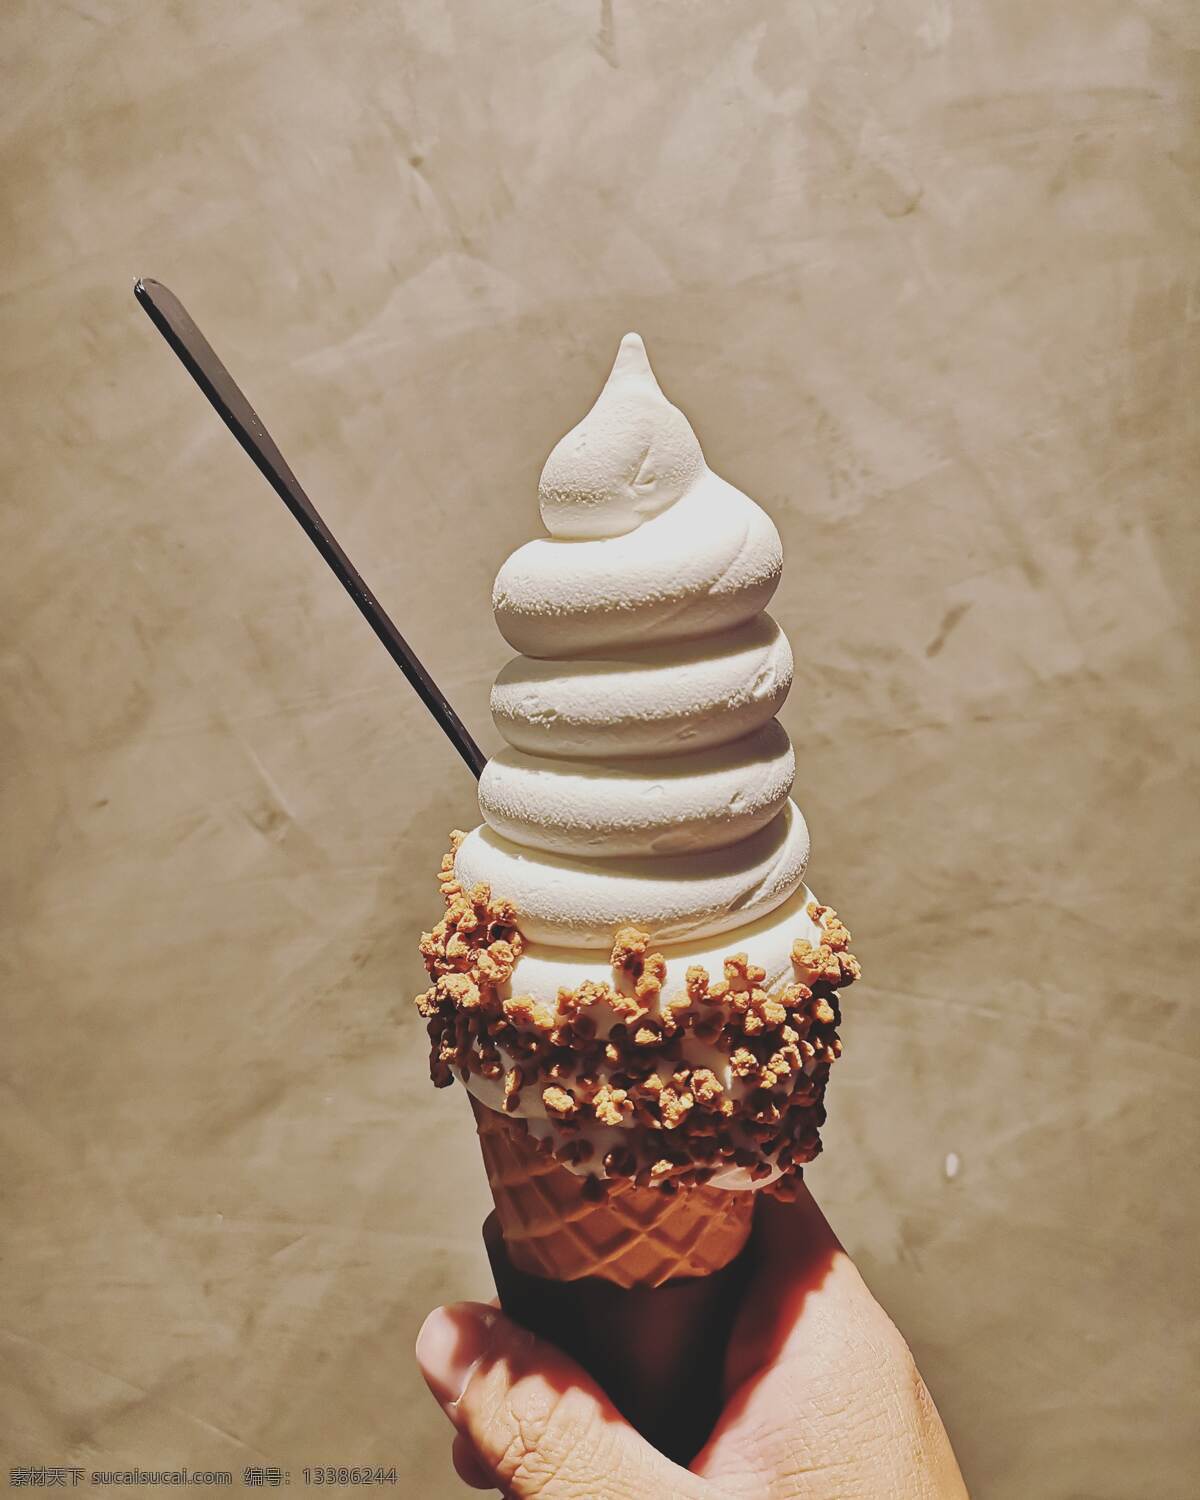 冰淇淋球 冰激凌 冷冻 双球 双球冰激凌 奶油 巧克力味 甜品 糕点 糖果 美味的甜点